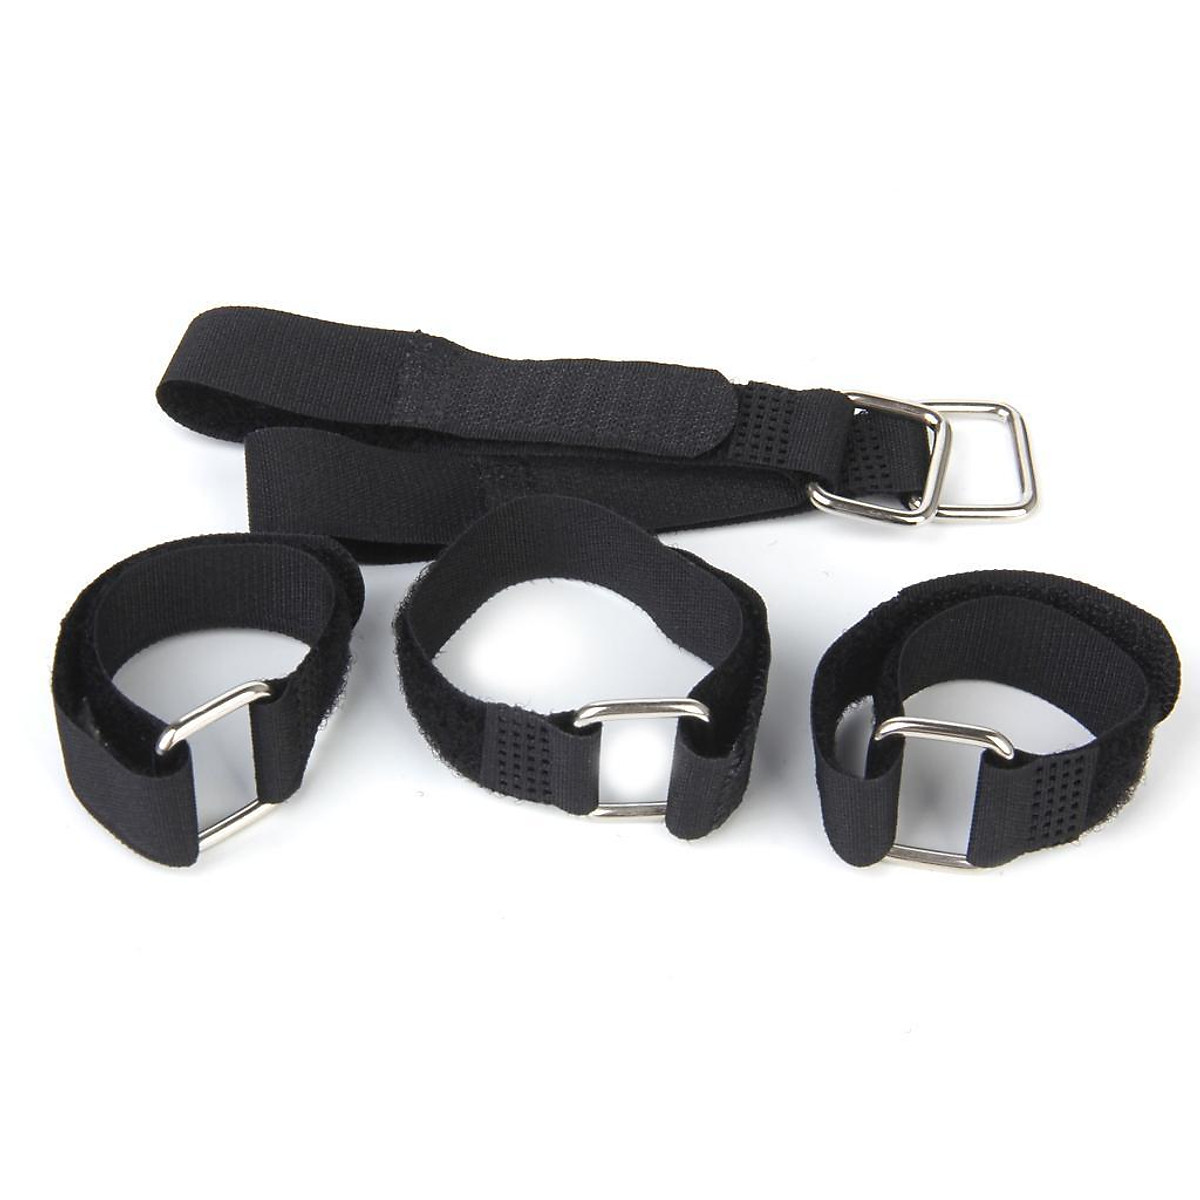 Adjustable Shoulder Straps, Bag Strap, Carrying Strap For Shoulder Bag,  Wide Shoulder Strap, Adjustable Belt For Cross Body Handbag, Purse